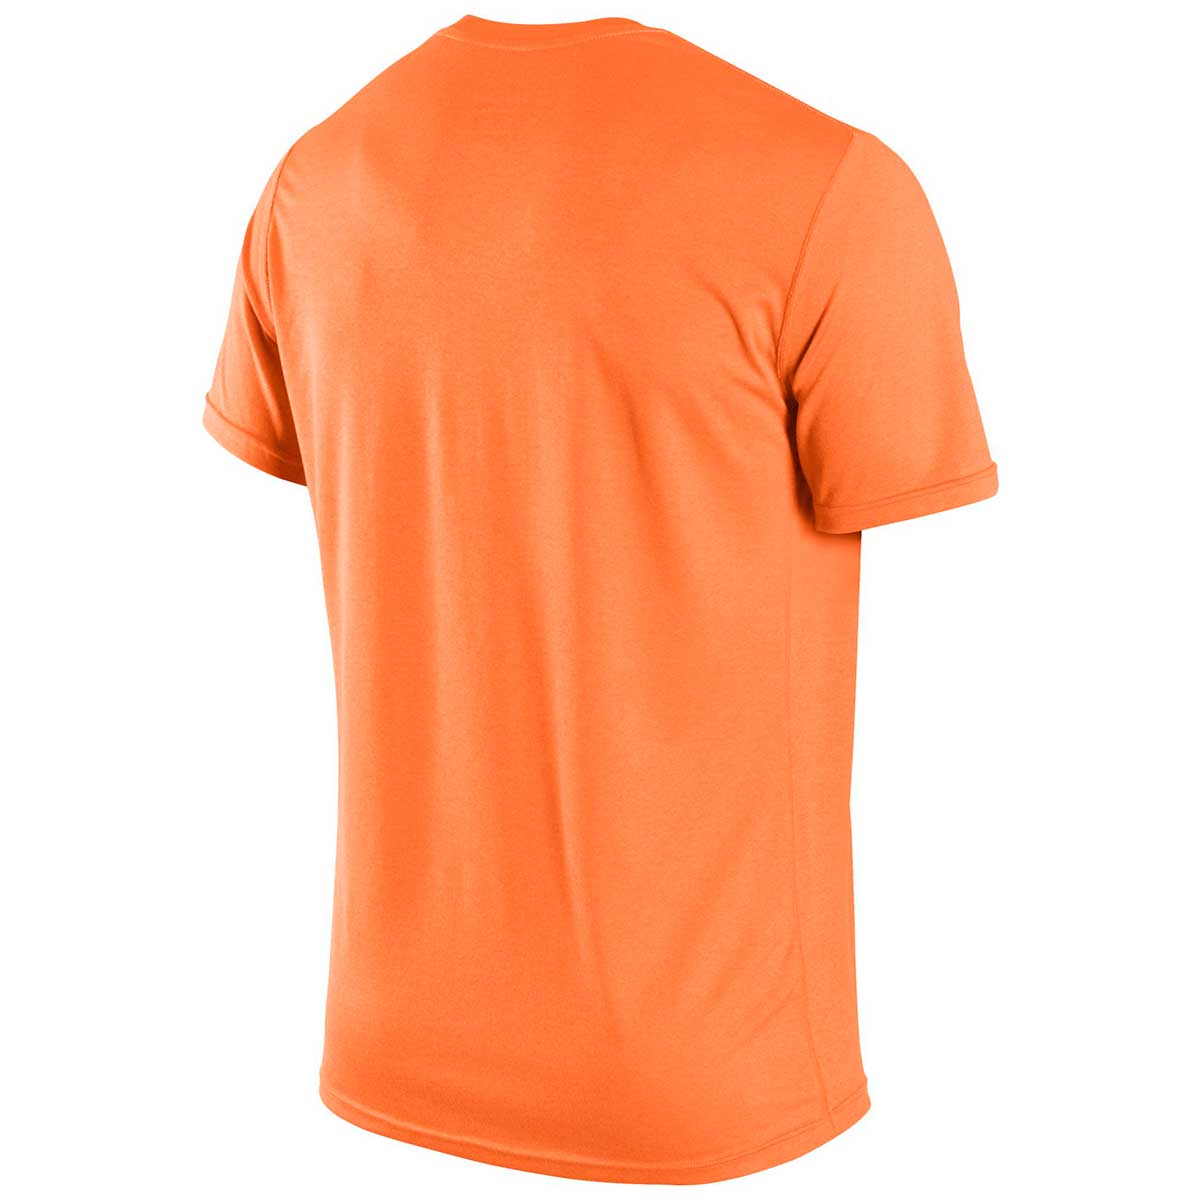 Buy Nike Basic Legend Round Neck T-Shirt (Orange) Online